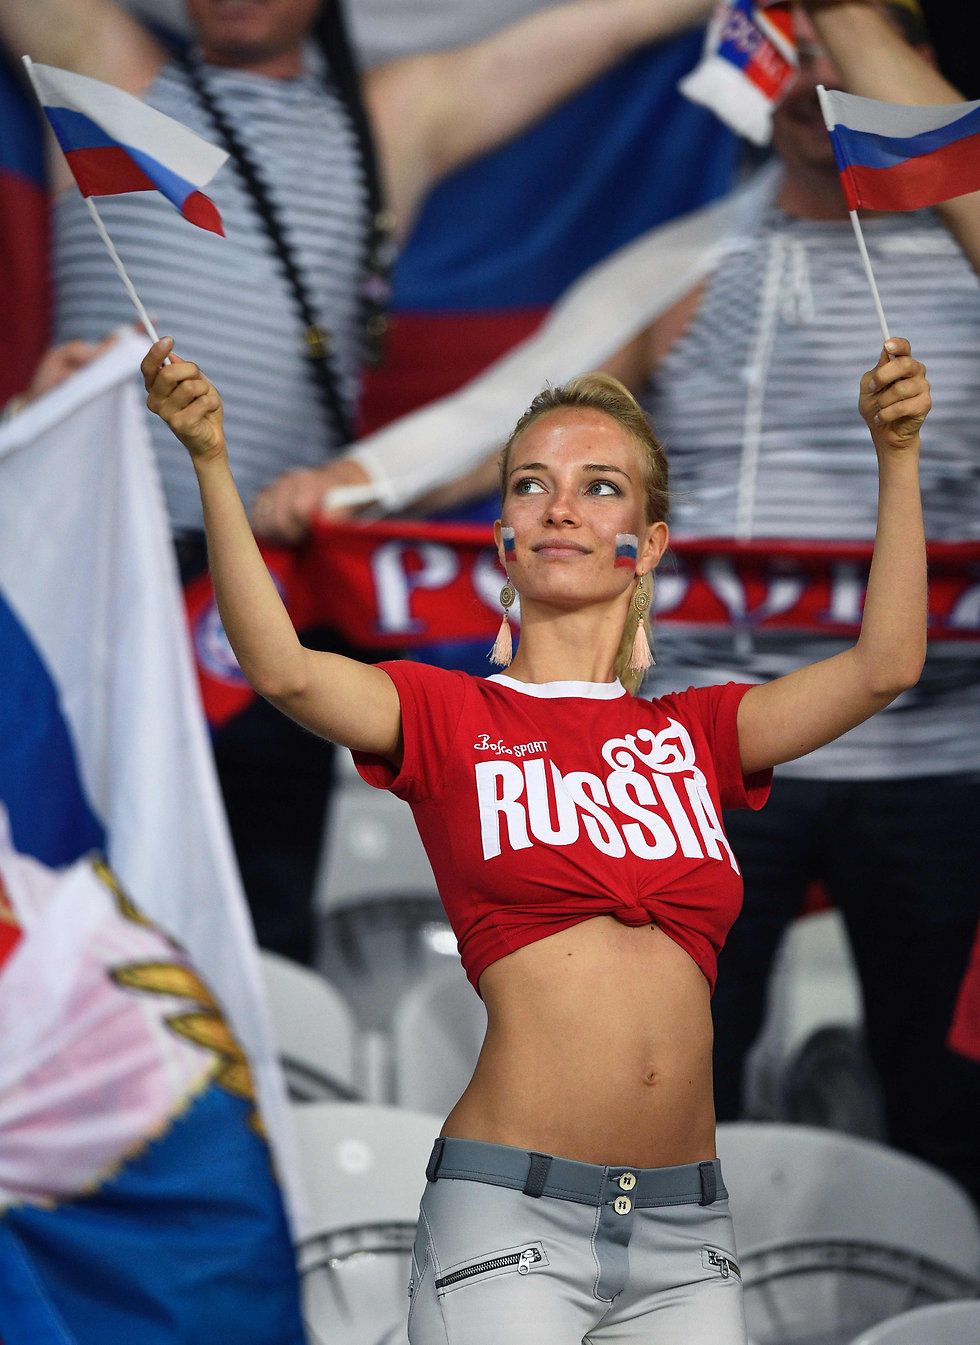 רק כדי שלא יהיה ספק, רשום על החולצה. אוהדת רוסיה (צילום: איי אף פי) (צילום: איי אף פי)